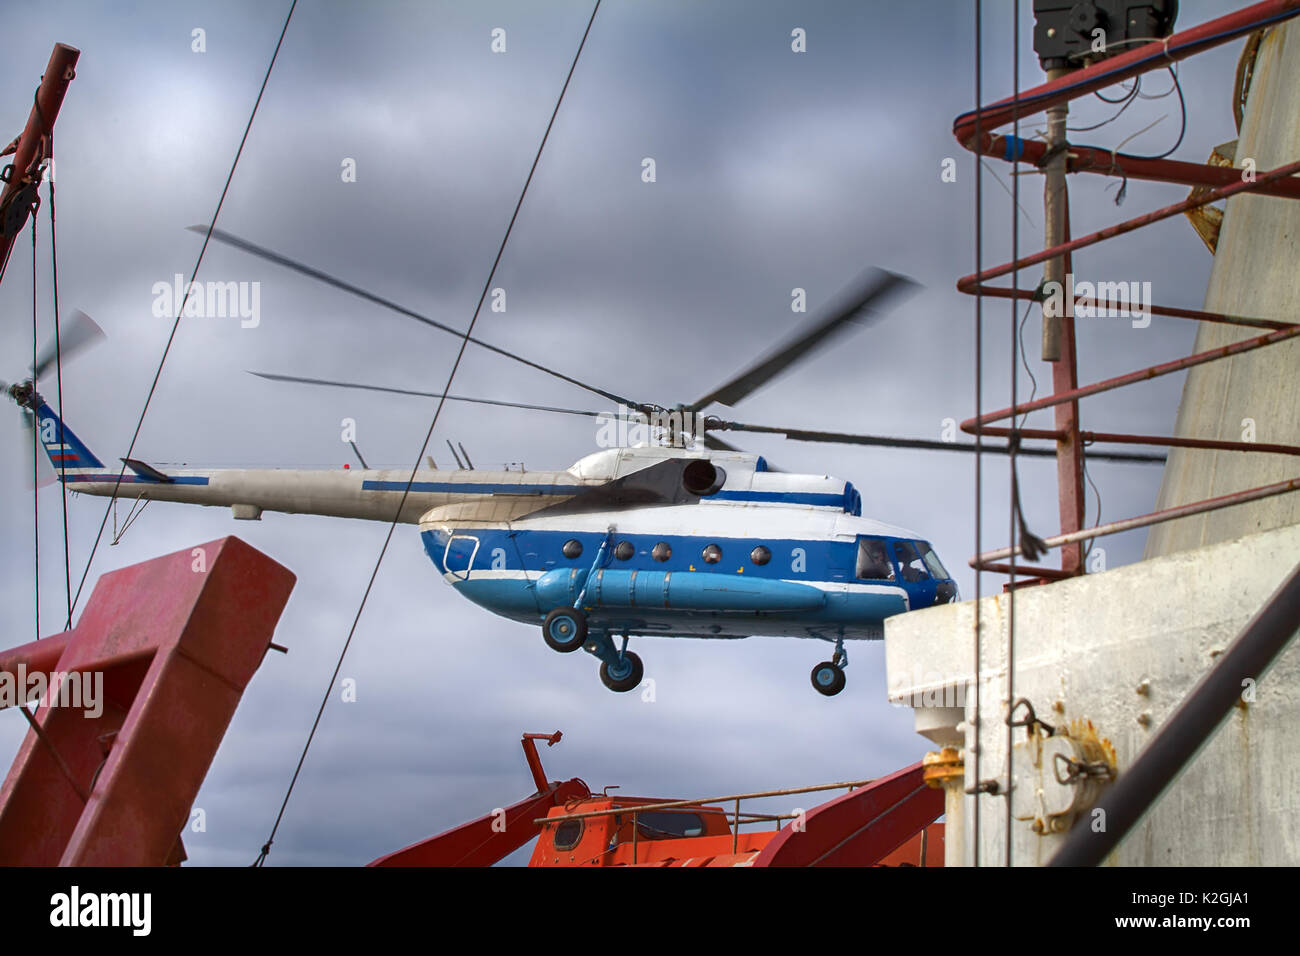 Des navires en état de naviguer, d'hélicoptère, l'hélicoptère hélicoptère rotor unique. Hélicoptère décolle du pont d'un brise-glace à glace objet de reconnaissan Banque D'Images